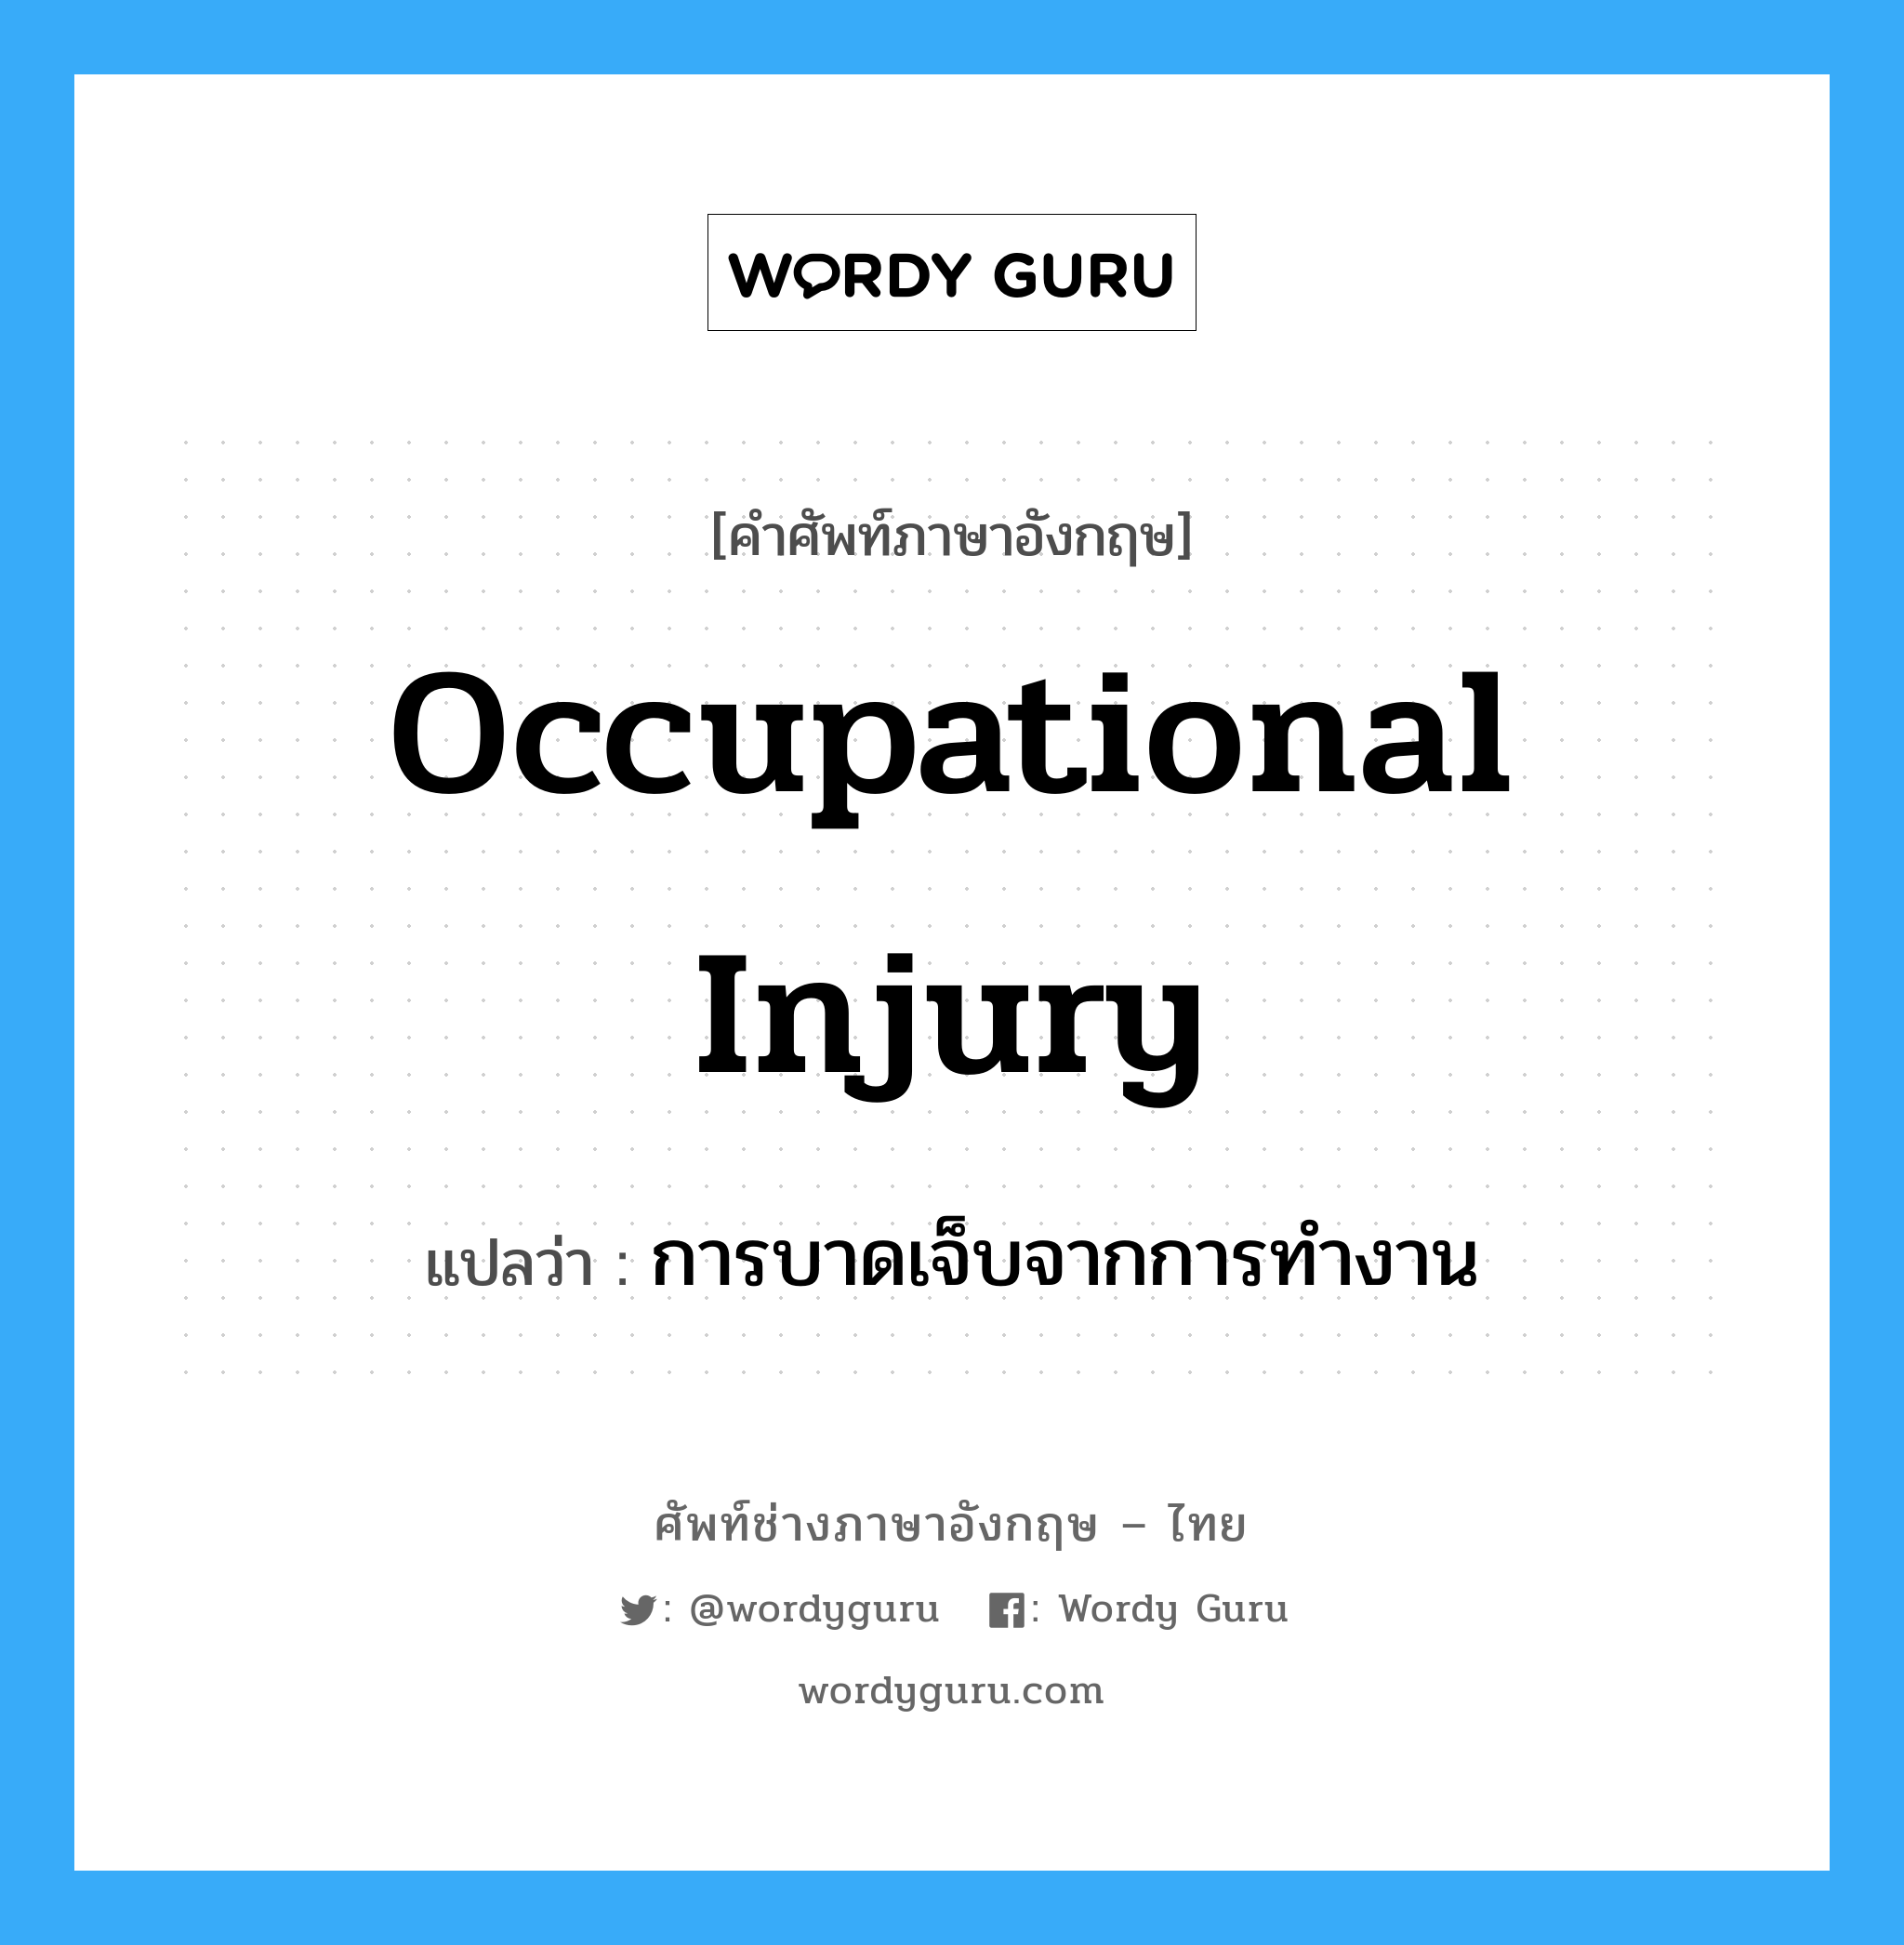 การบาดเจ็บจากการทำงาน ภาษาอังกฤษ?, คำศัพท์ช่างภาษาอังกฤษ - ไทย การบาดเจ็บจากการทำงาน คำศัพท์ภาษาอังกฤษ การบาดเจ็บจากการทำงาน แปลว่า Occupational Injury